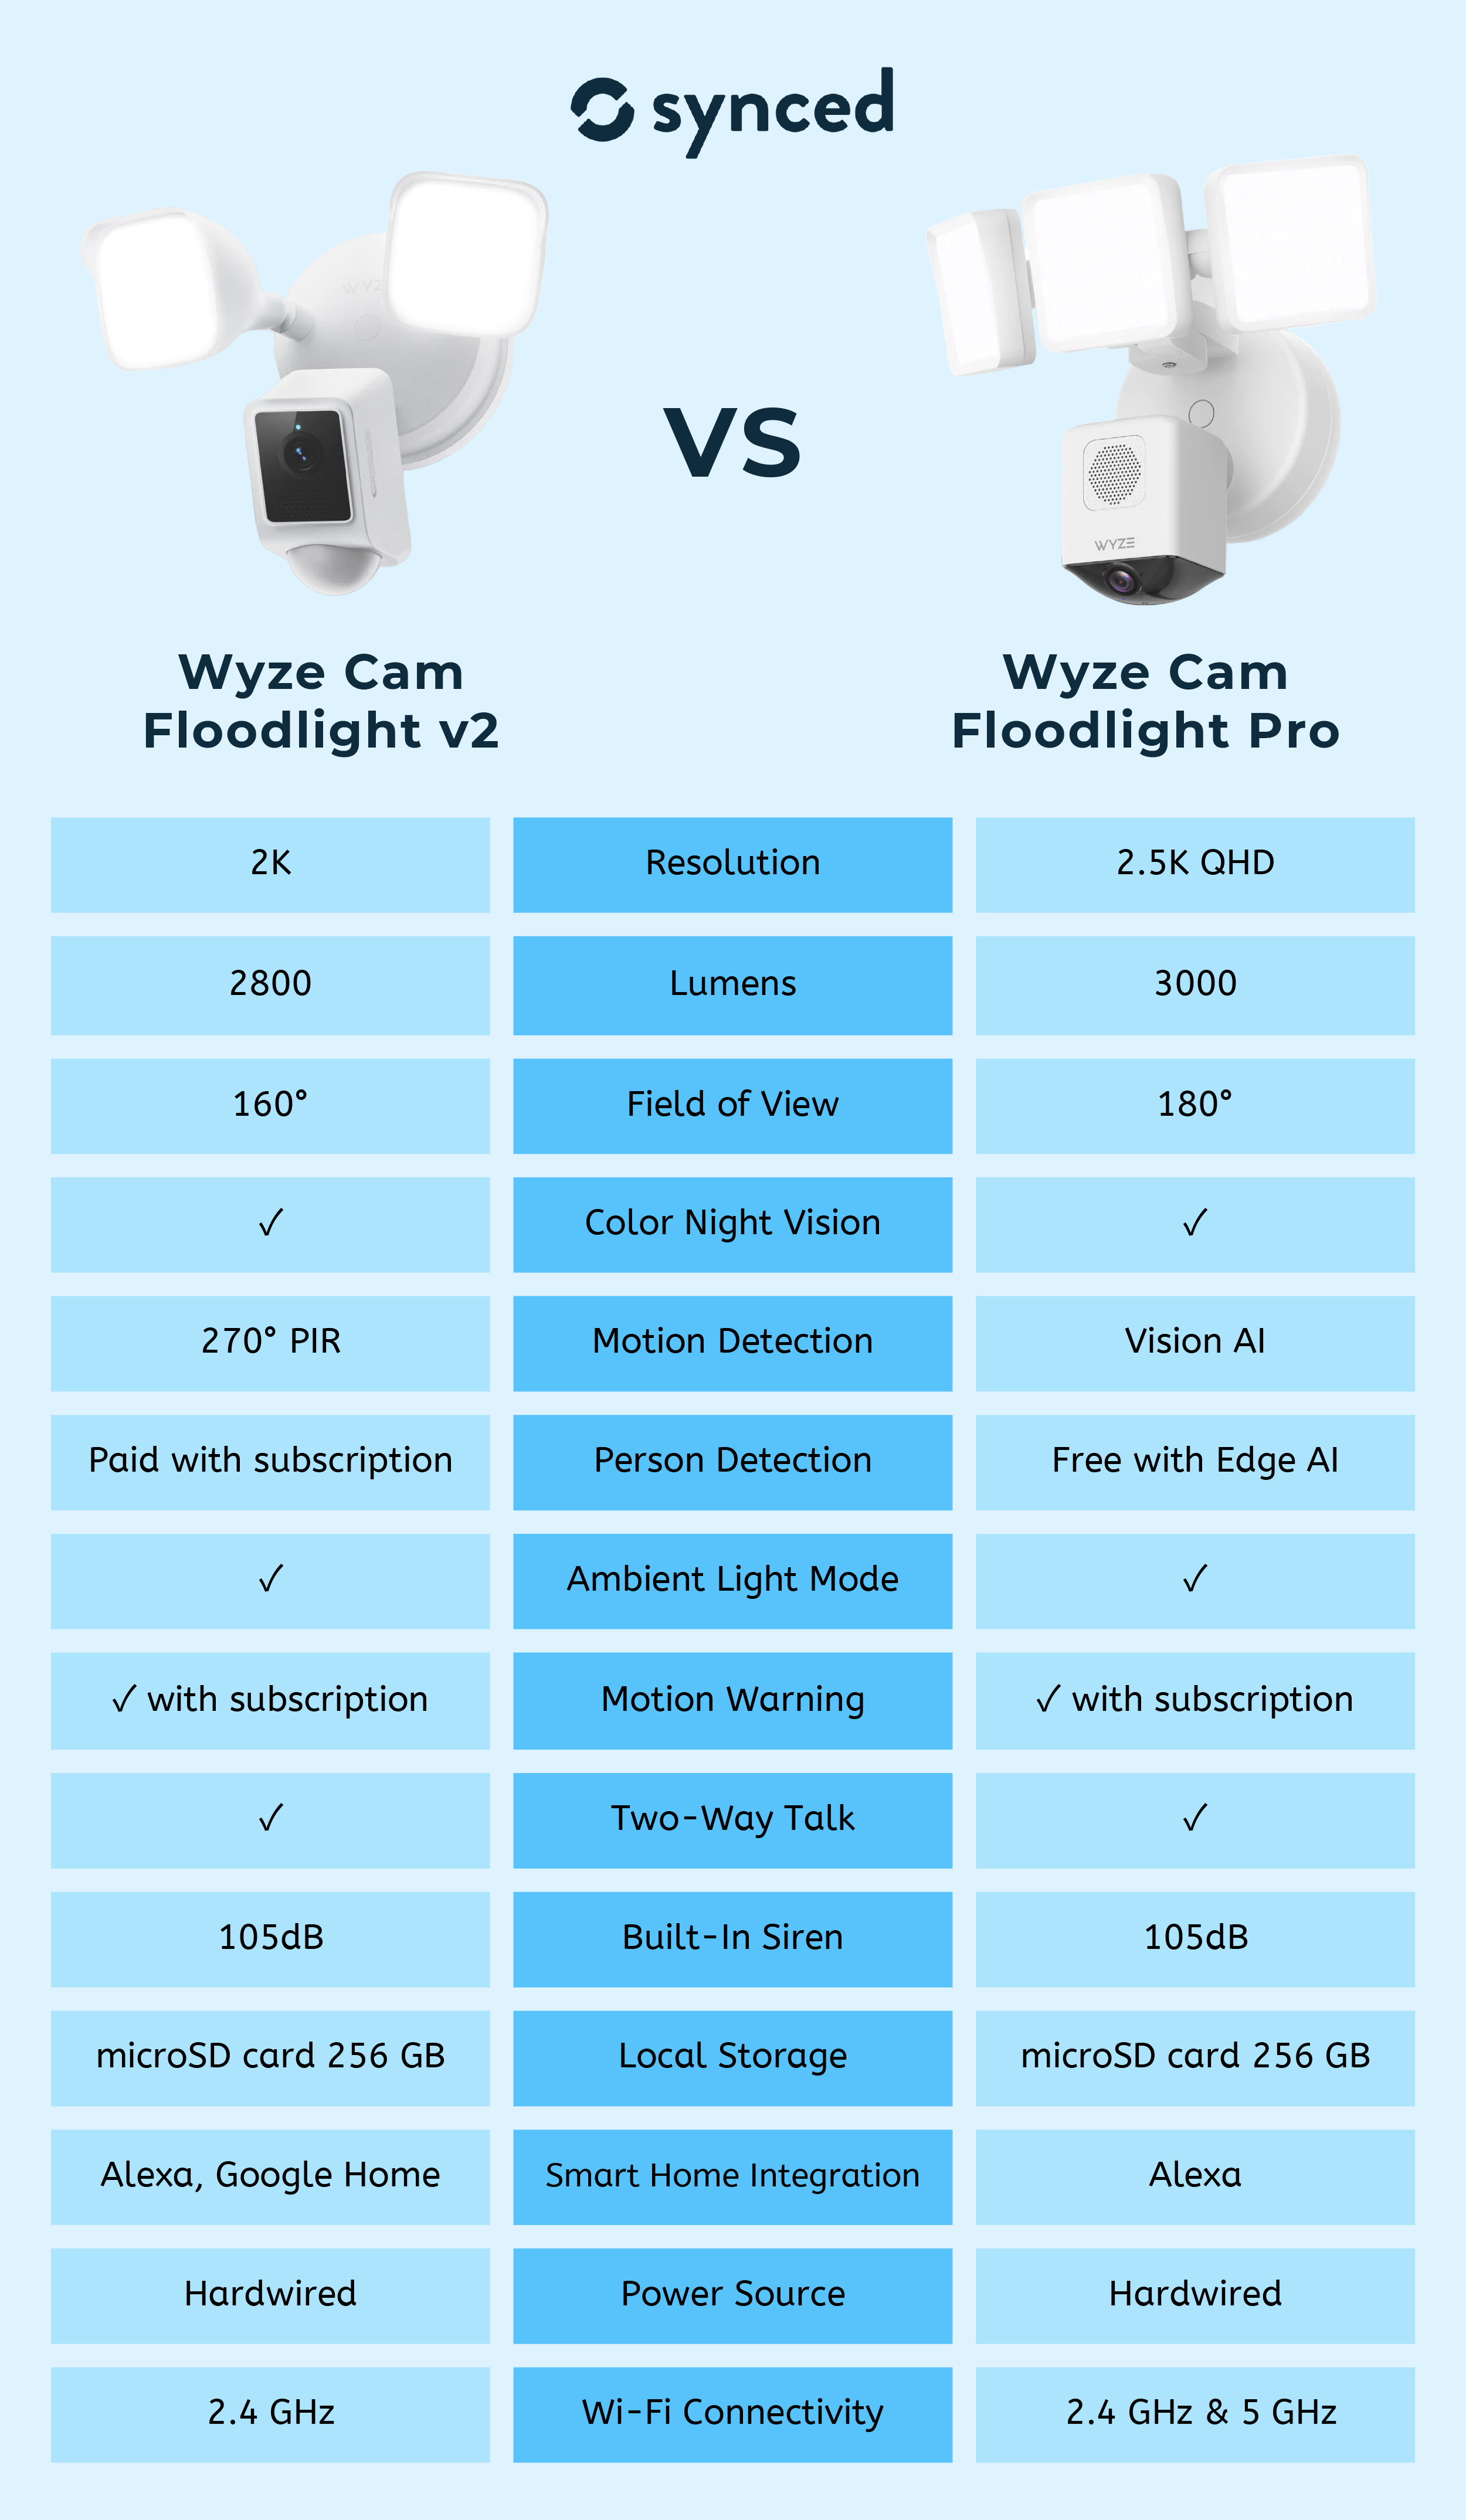 Wyze Cam Floodlight v2 vs Pro